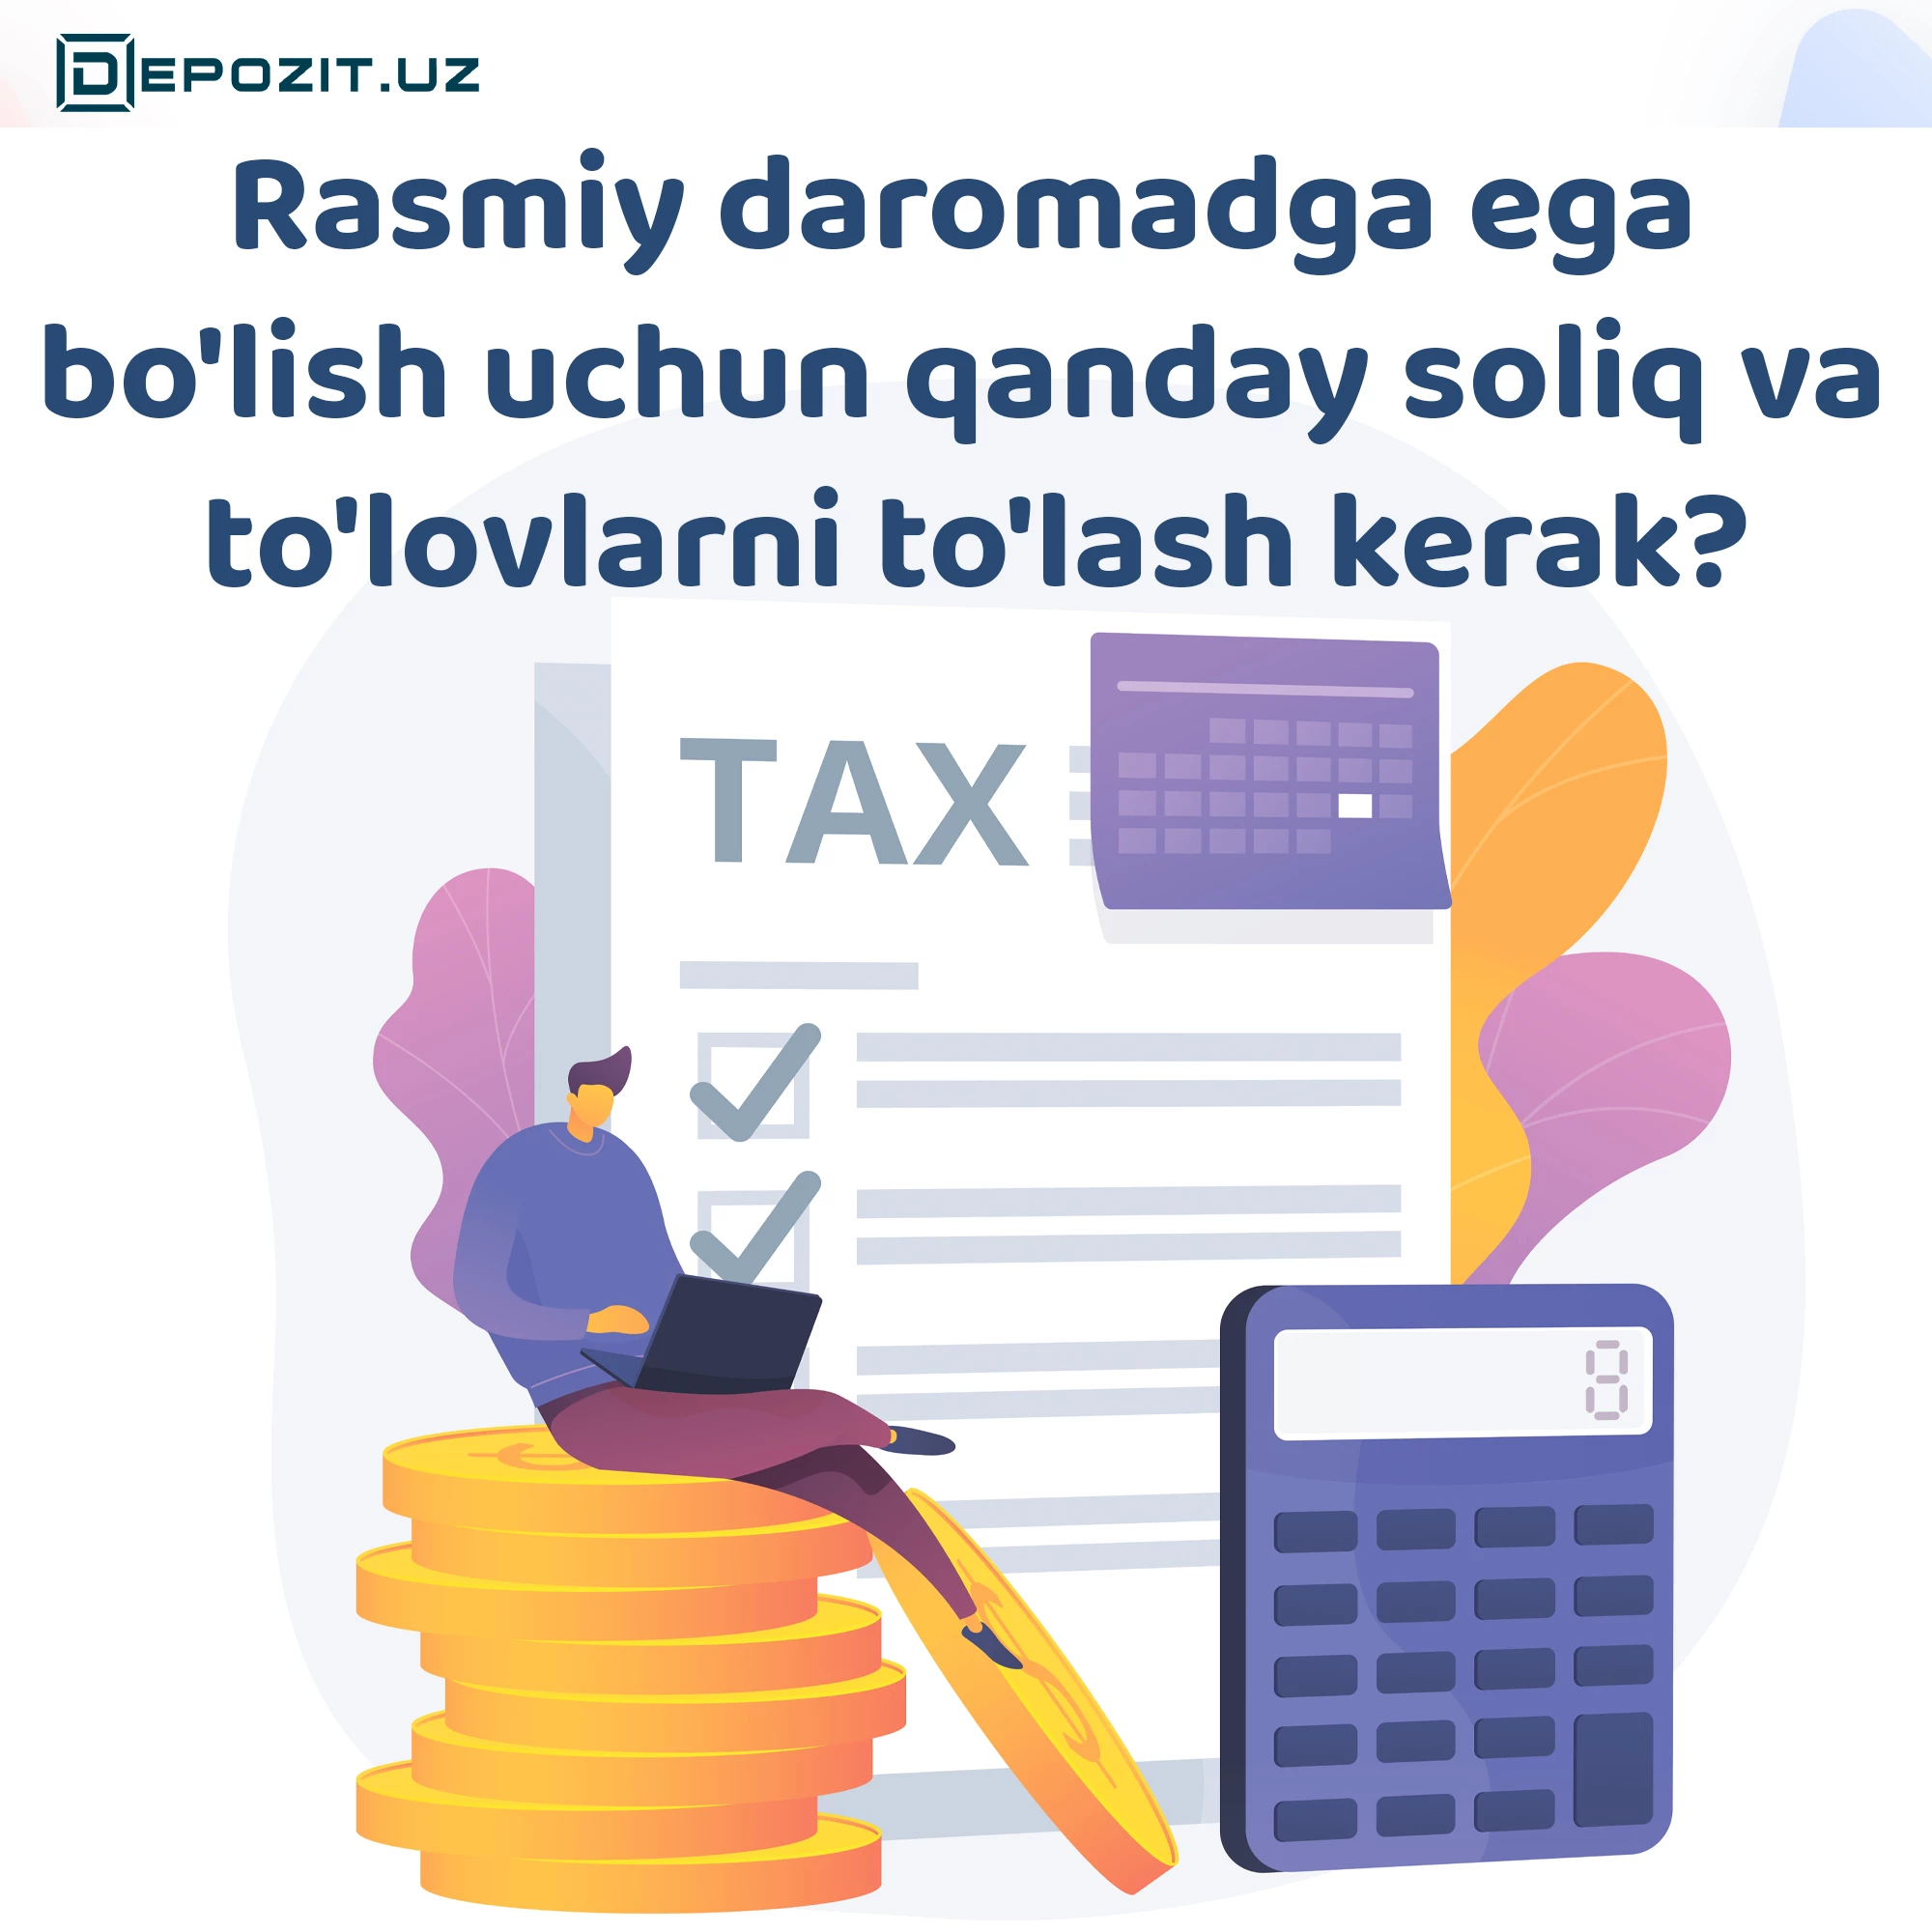 depozit.uz Какие налоги и выплаты нужно заплатить, чтобы иметь официальный доход?